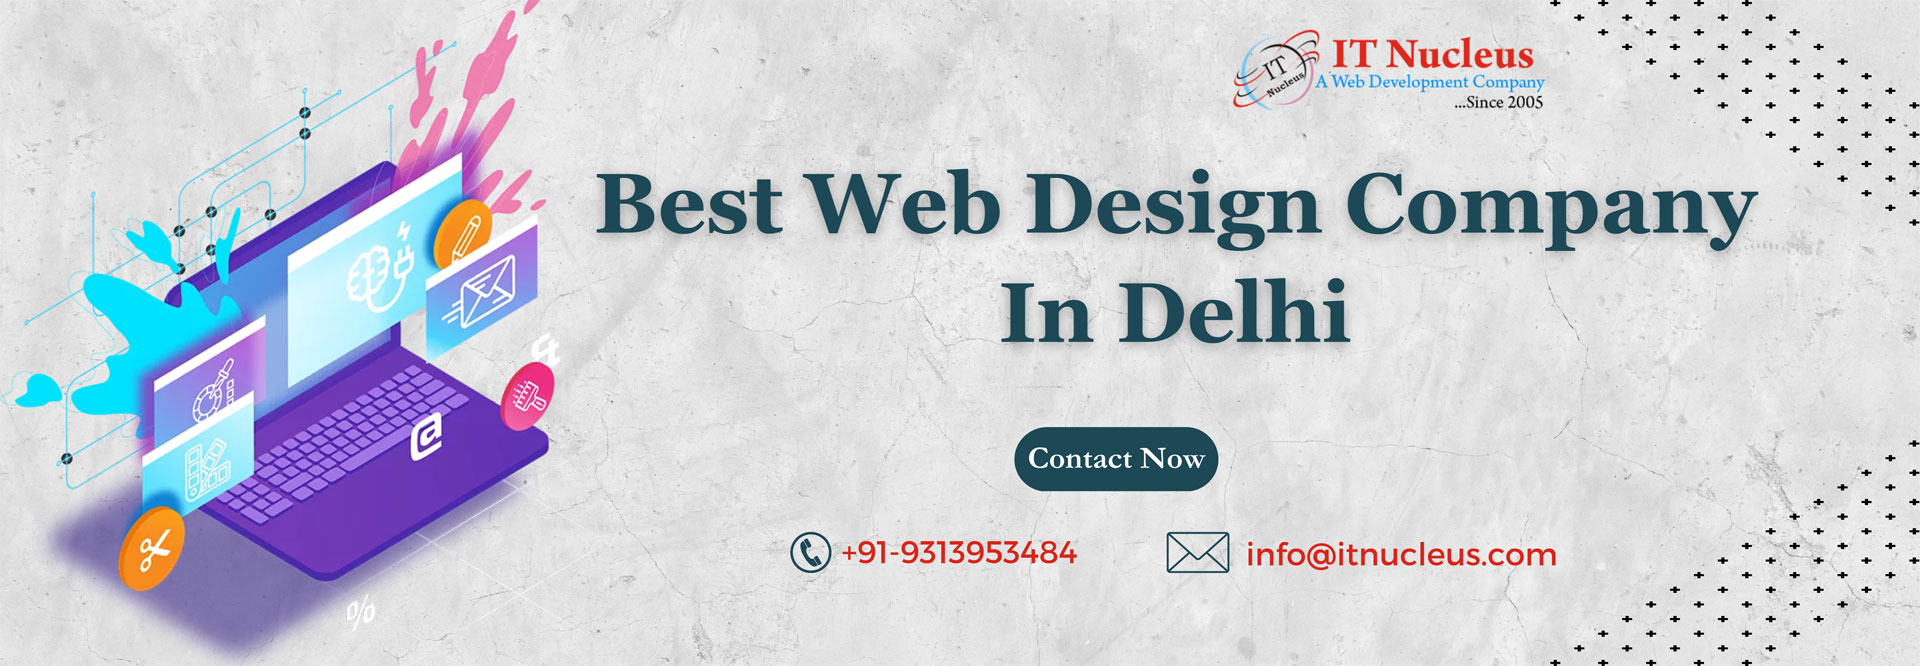 Best Web Design Company In Delhi